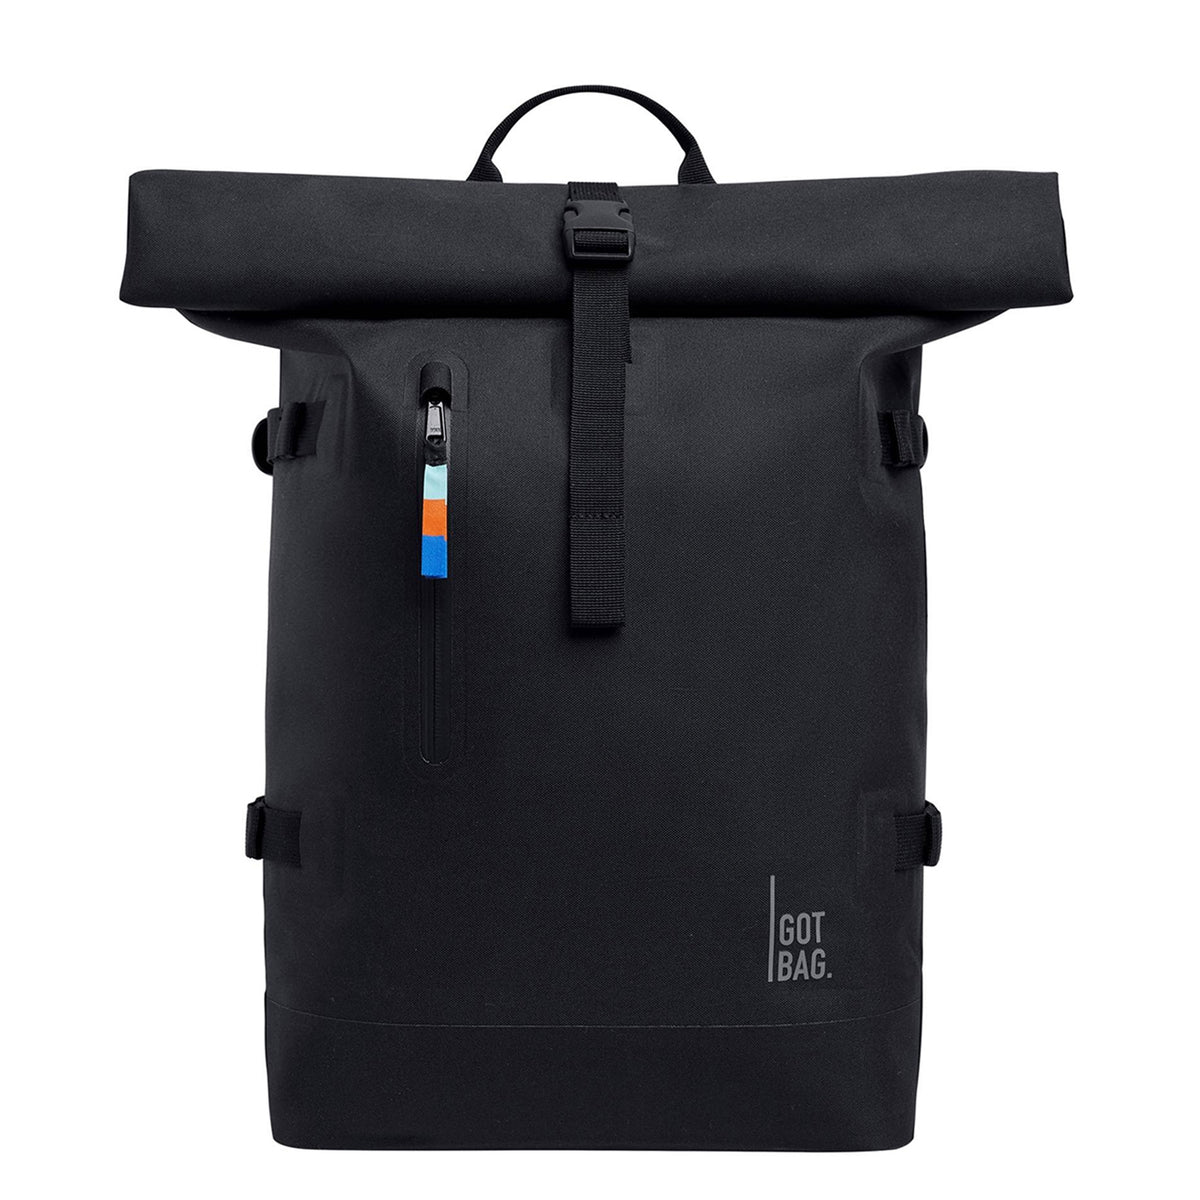 Rucksack RollTop 2.0 black, Got Bag